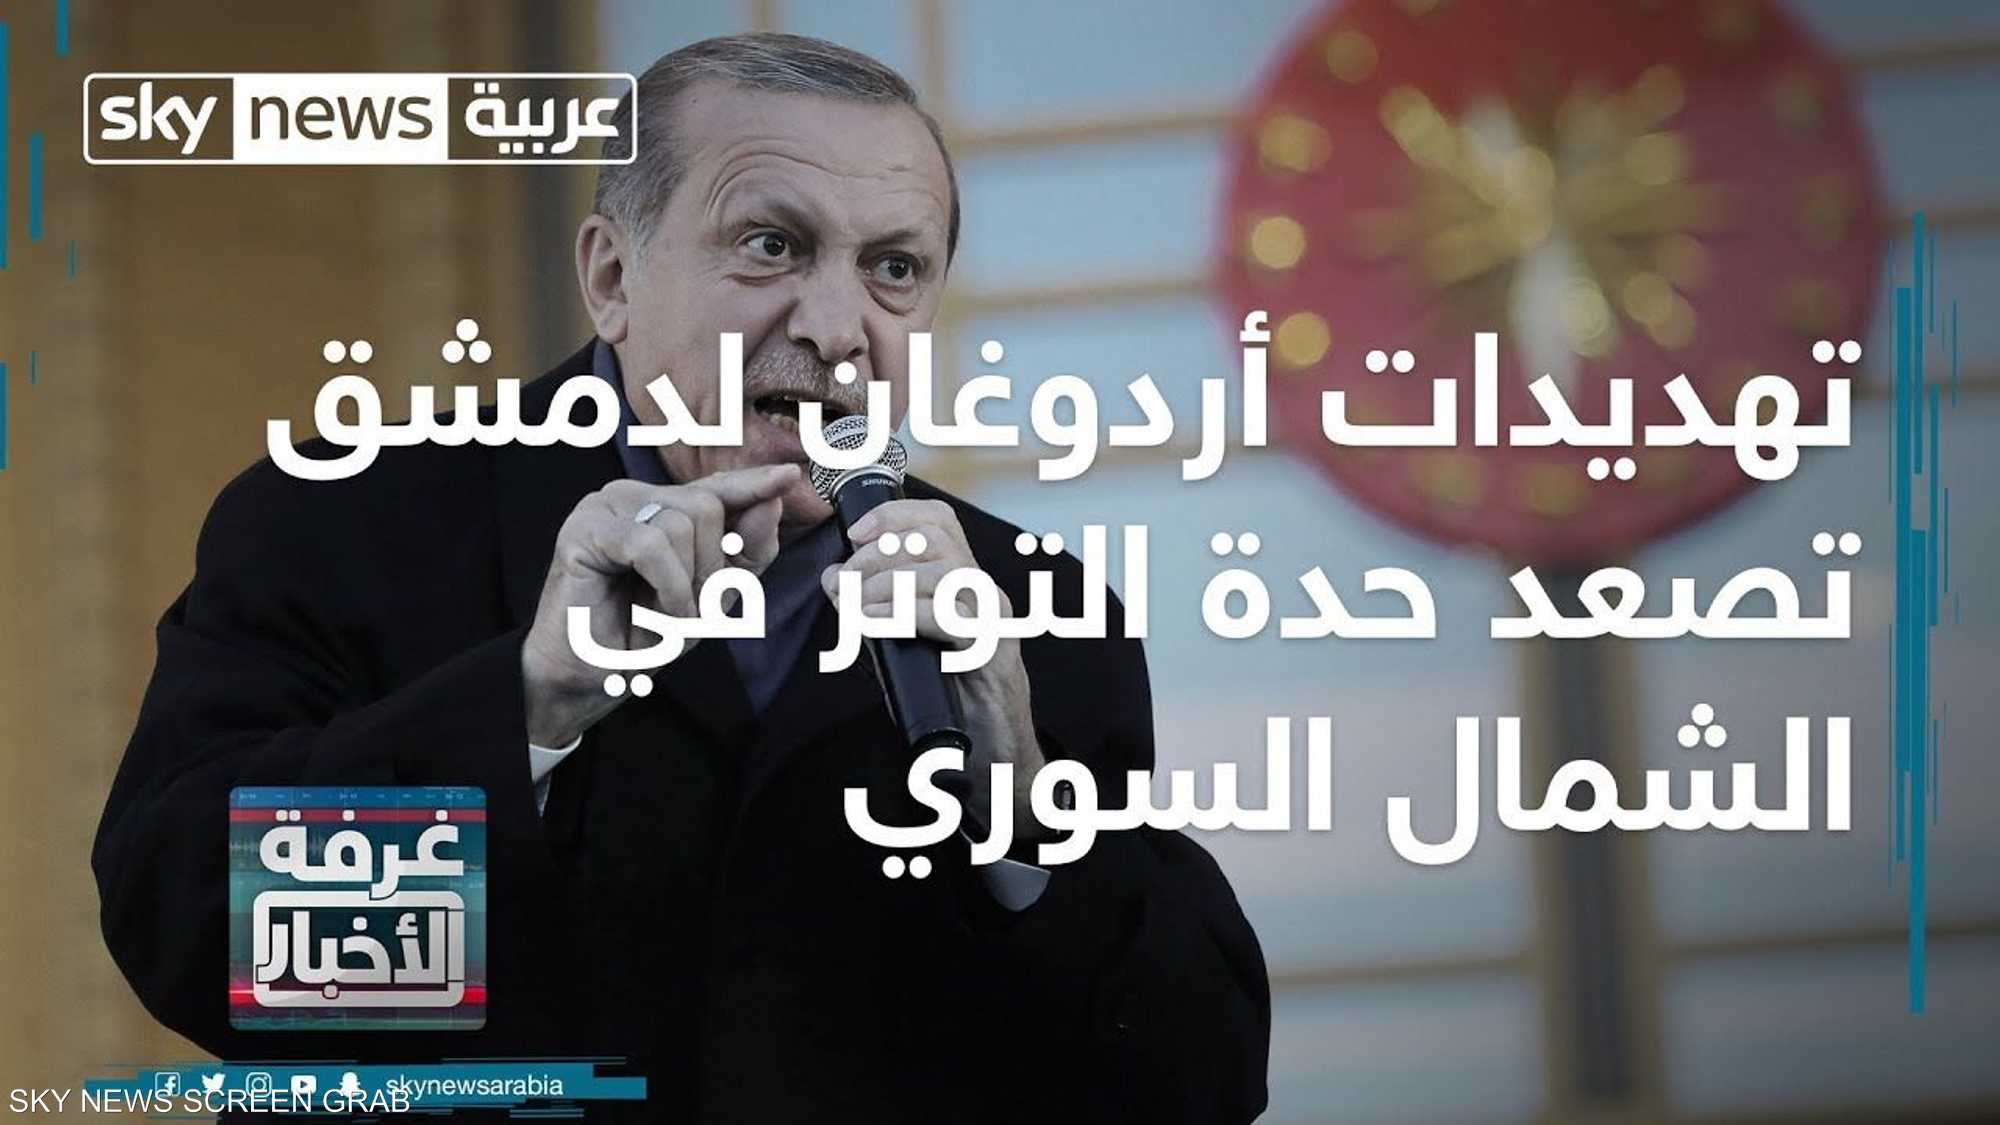 تهديدات أردوغان لدمشق تصعد حدة التوتر في الشمال السوري